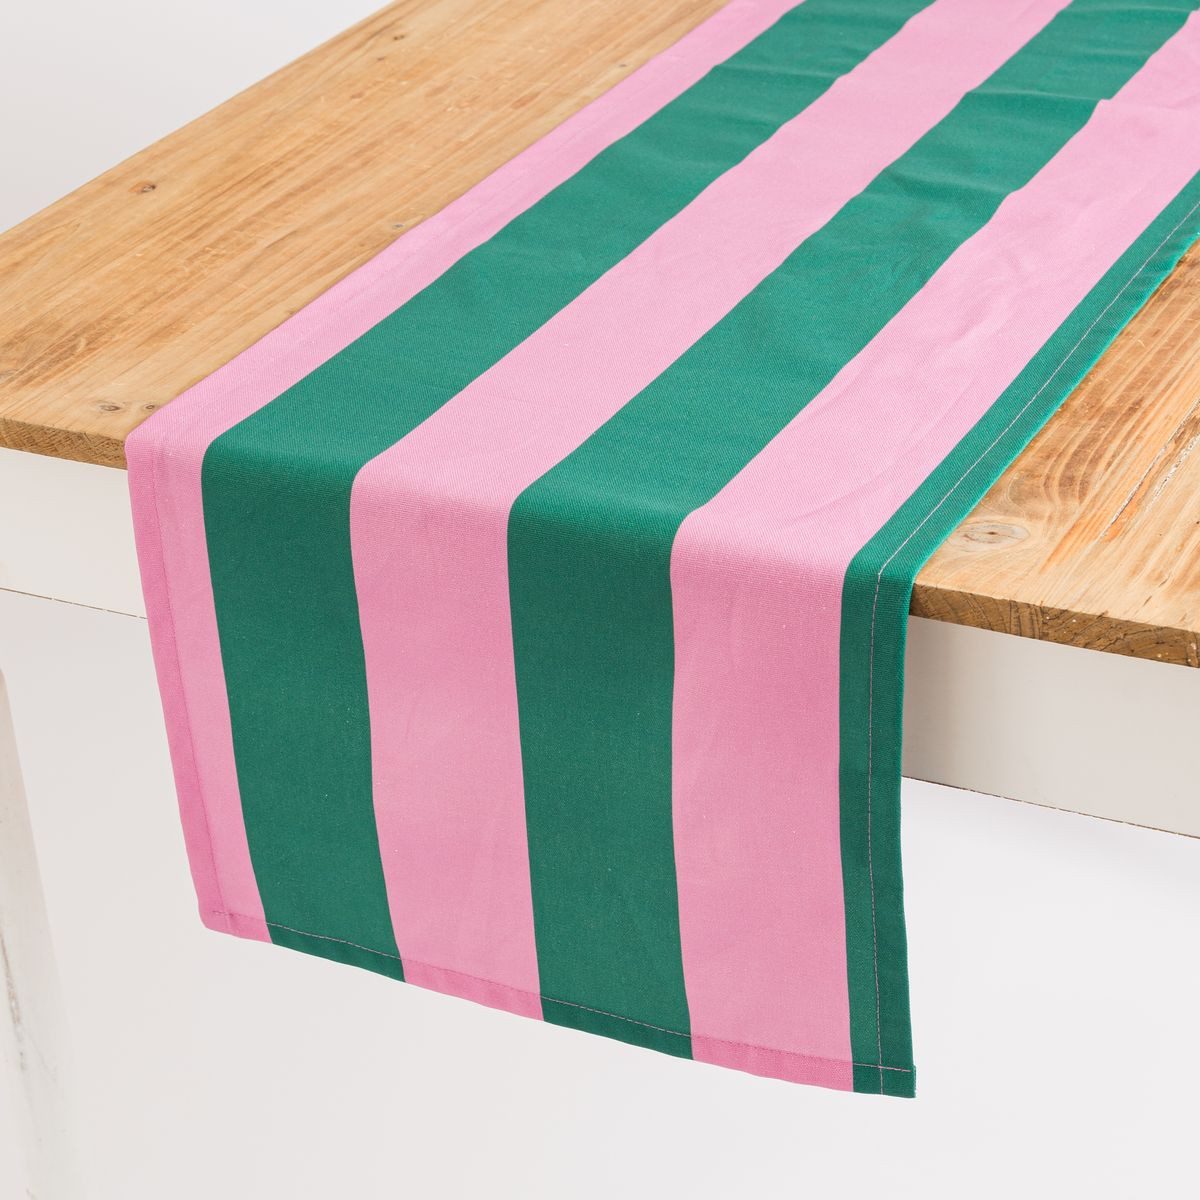 SCHÖNER LEBEN. Tischläufer Tischläufer Streifen dunkelgrün pink 40x160cm von SCHÖNER LEBEN., handmade